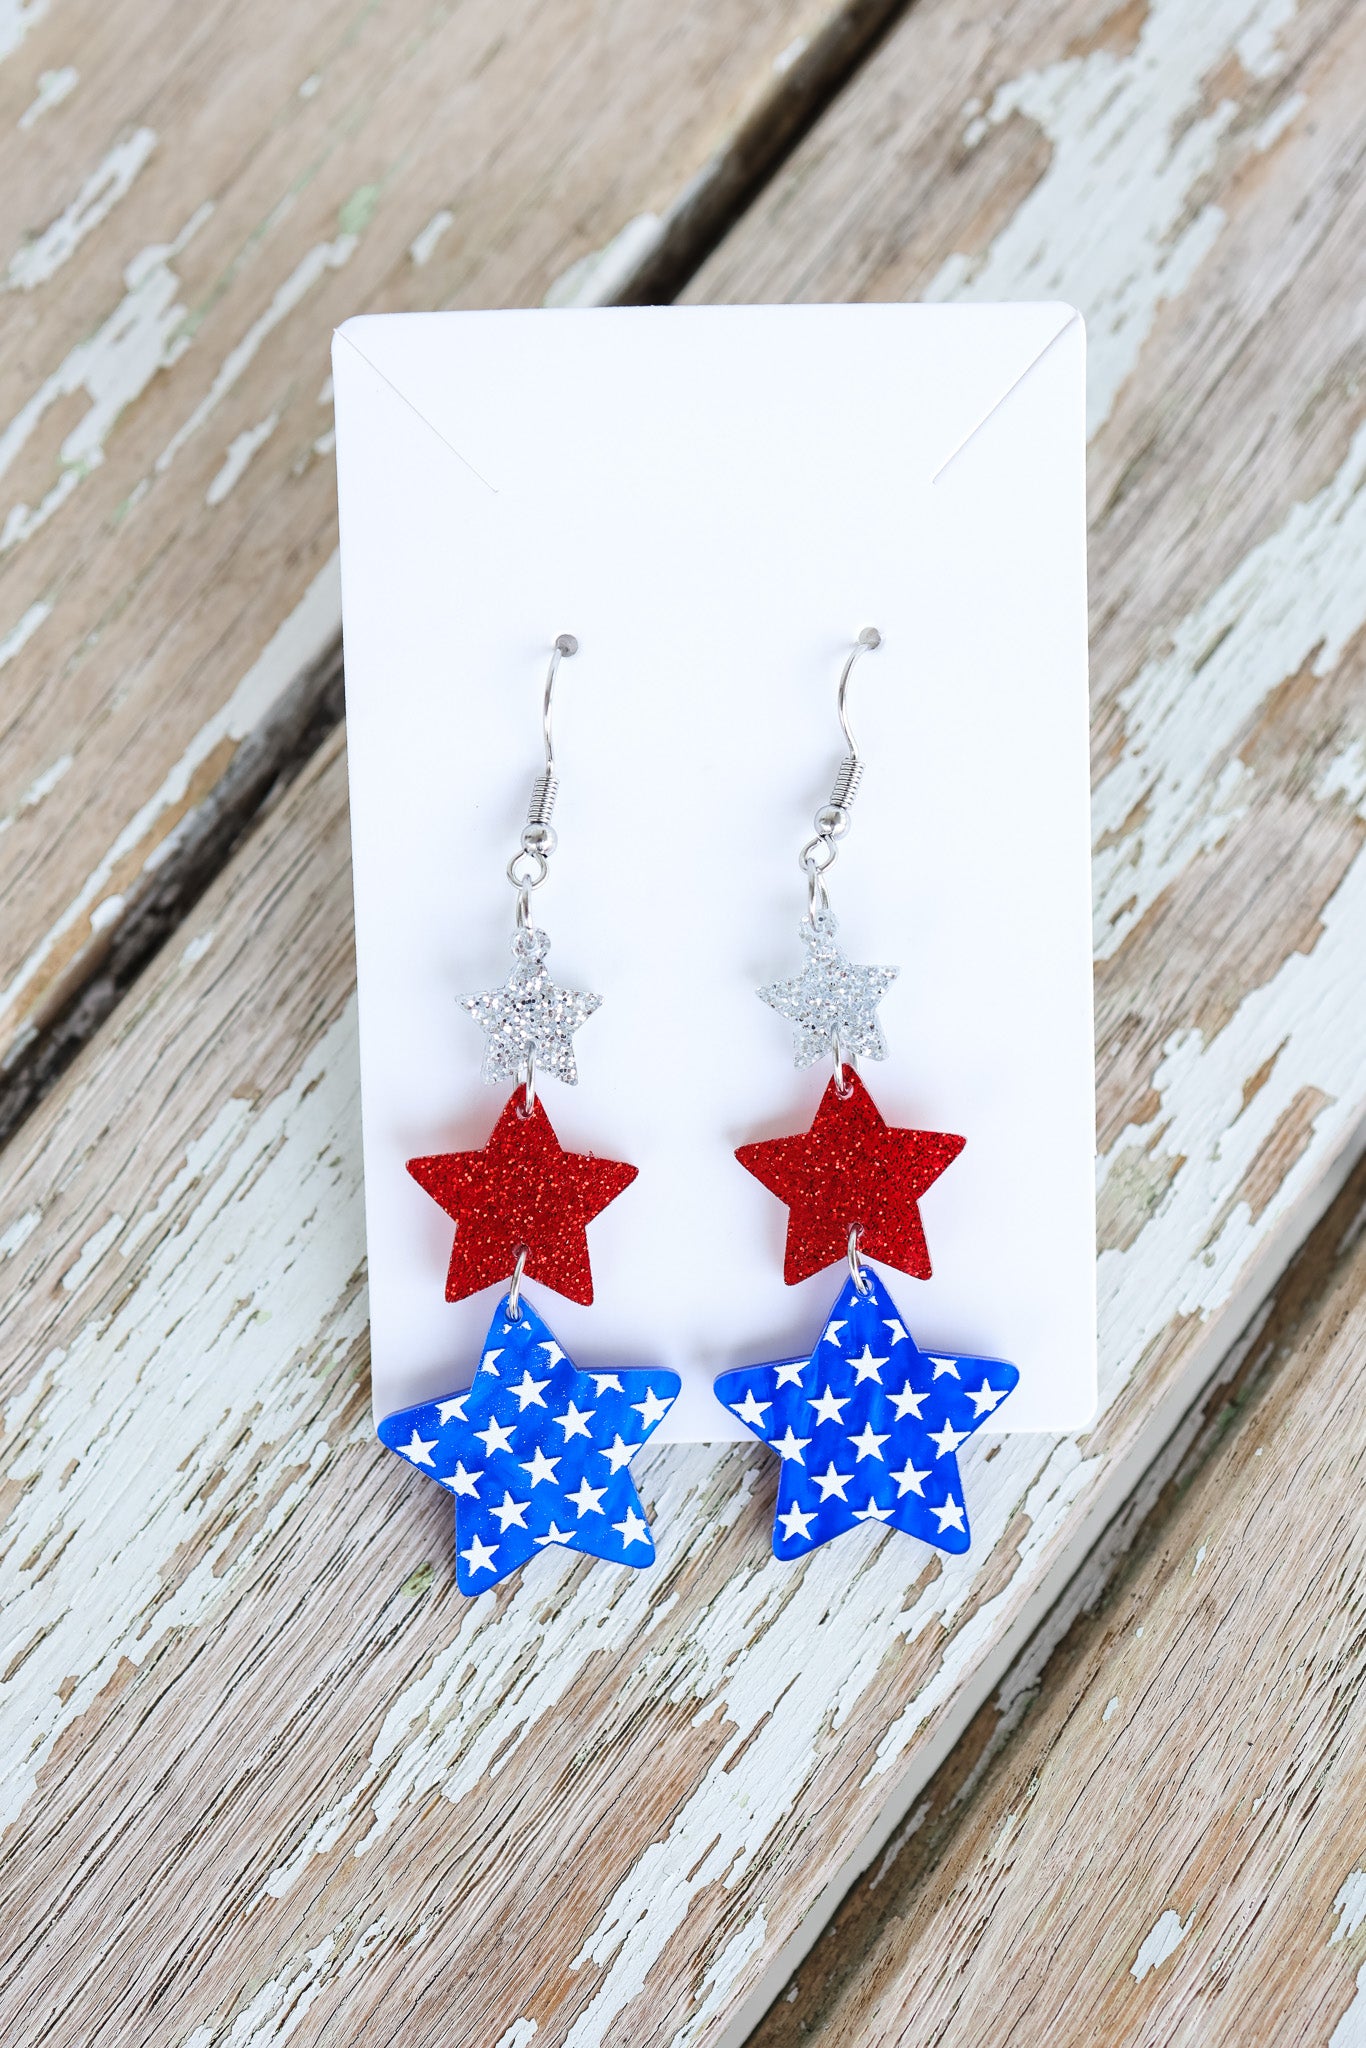 3 Star Patriotic Earrings